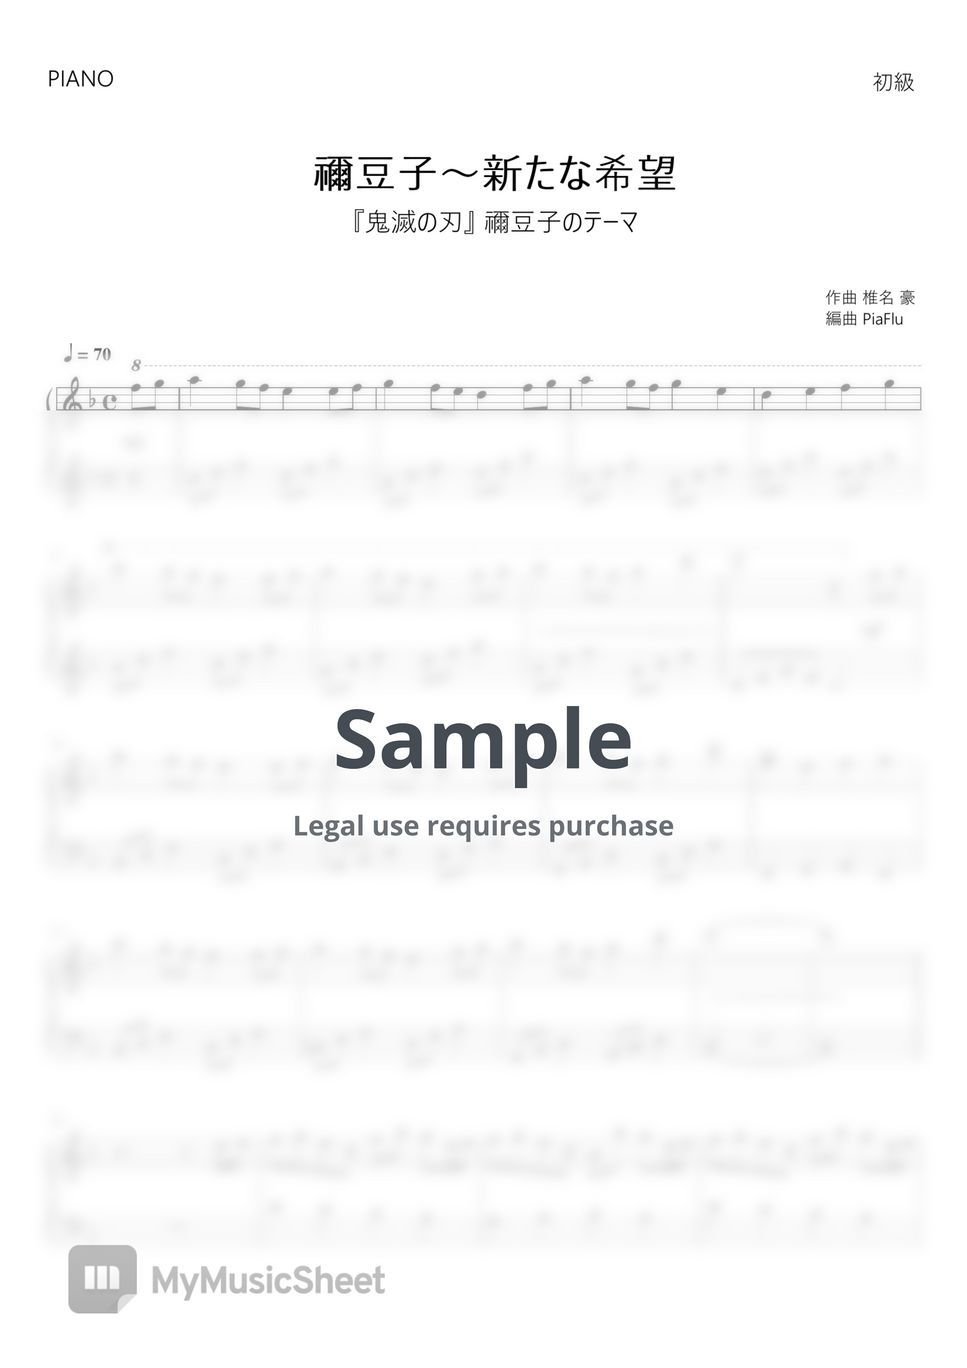 椎名 豪 - Go Shiina - Nezuko's Theme - Demon Slayer Kimetsu no Yaiba (Piano) by PiaFlu / ピアフル Piano&Flute